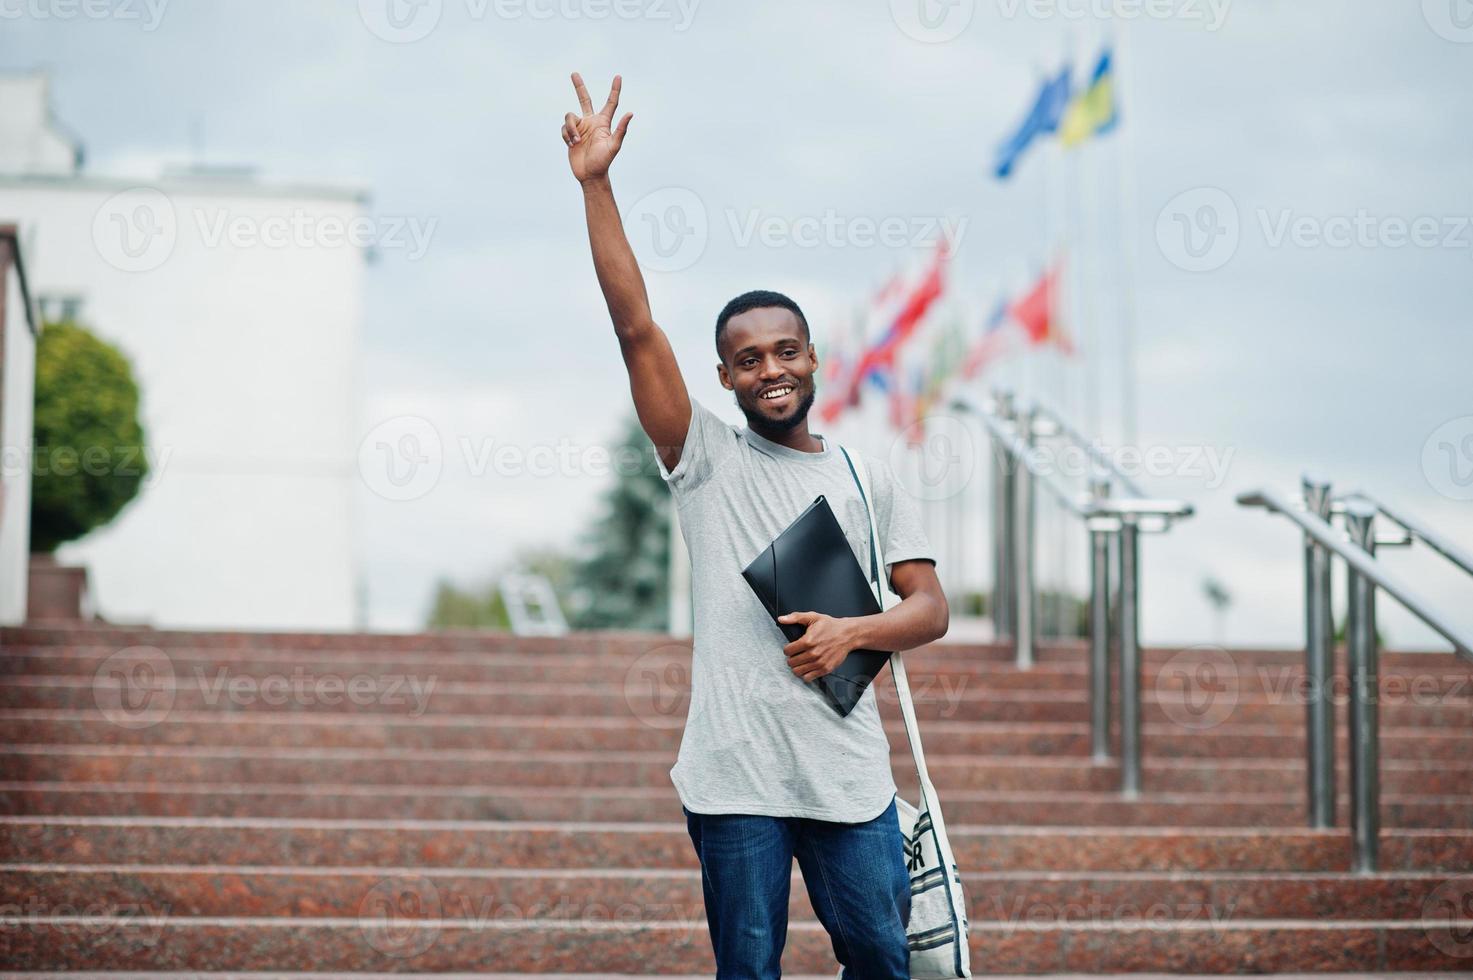 studente africano maschio posato con zaino e articoli per la scuola nel cortile dell'università, contro le bandiere di diversi paesi. mostra due dita. foto